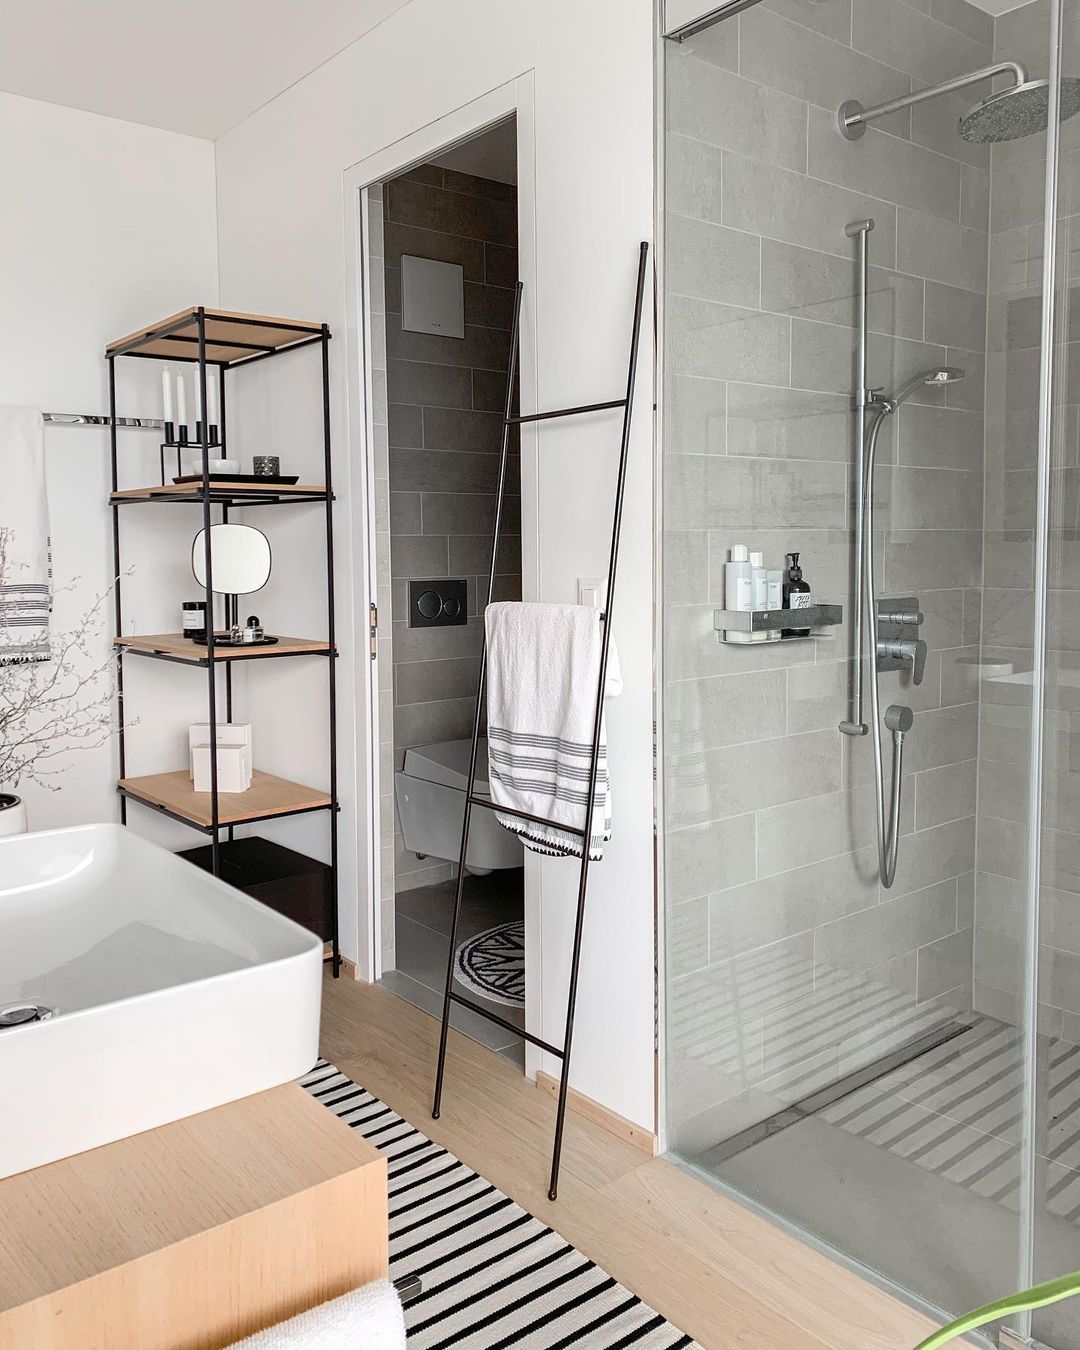 Scandinavian Bathroom with Metal Leaning Towel Ladder via @oh.boheme